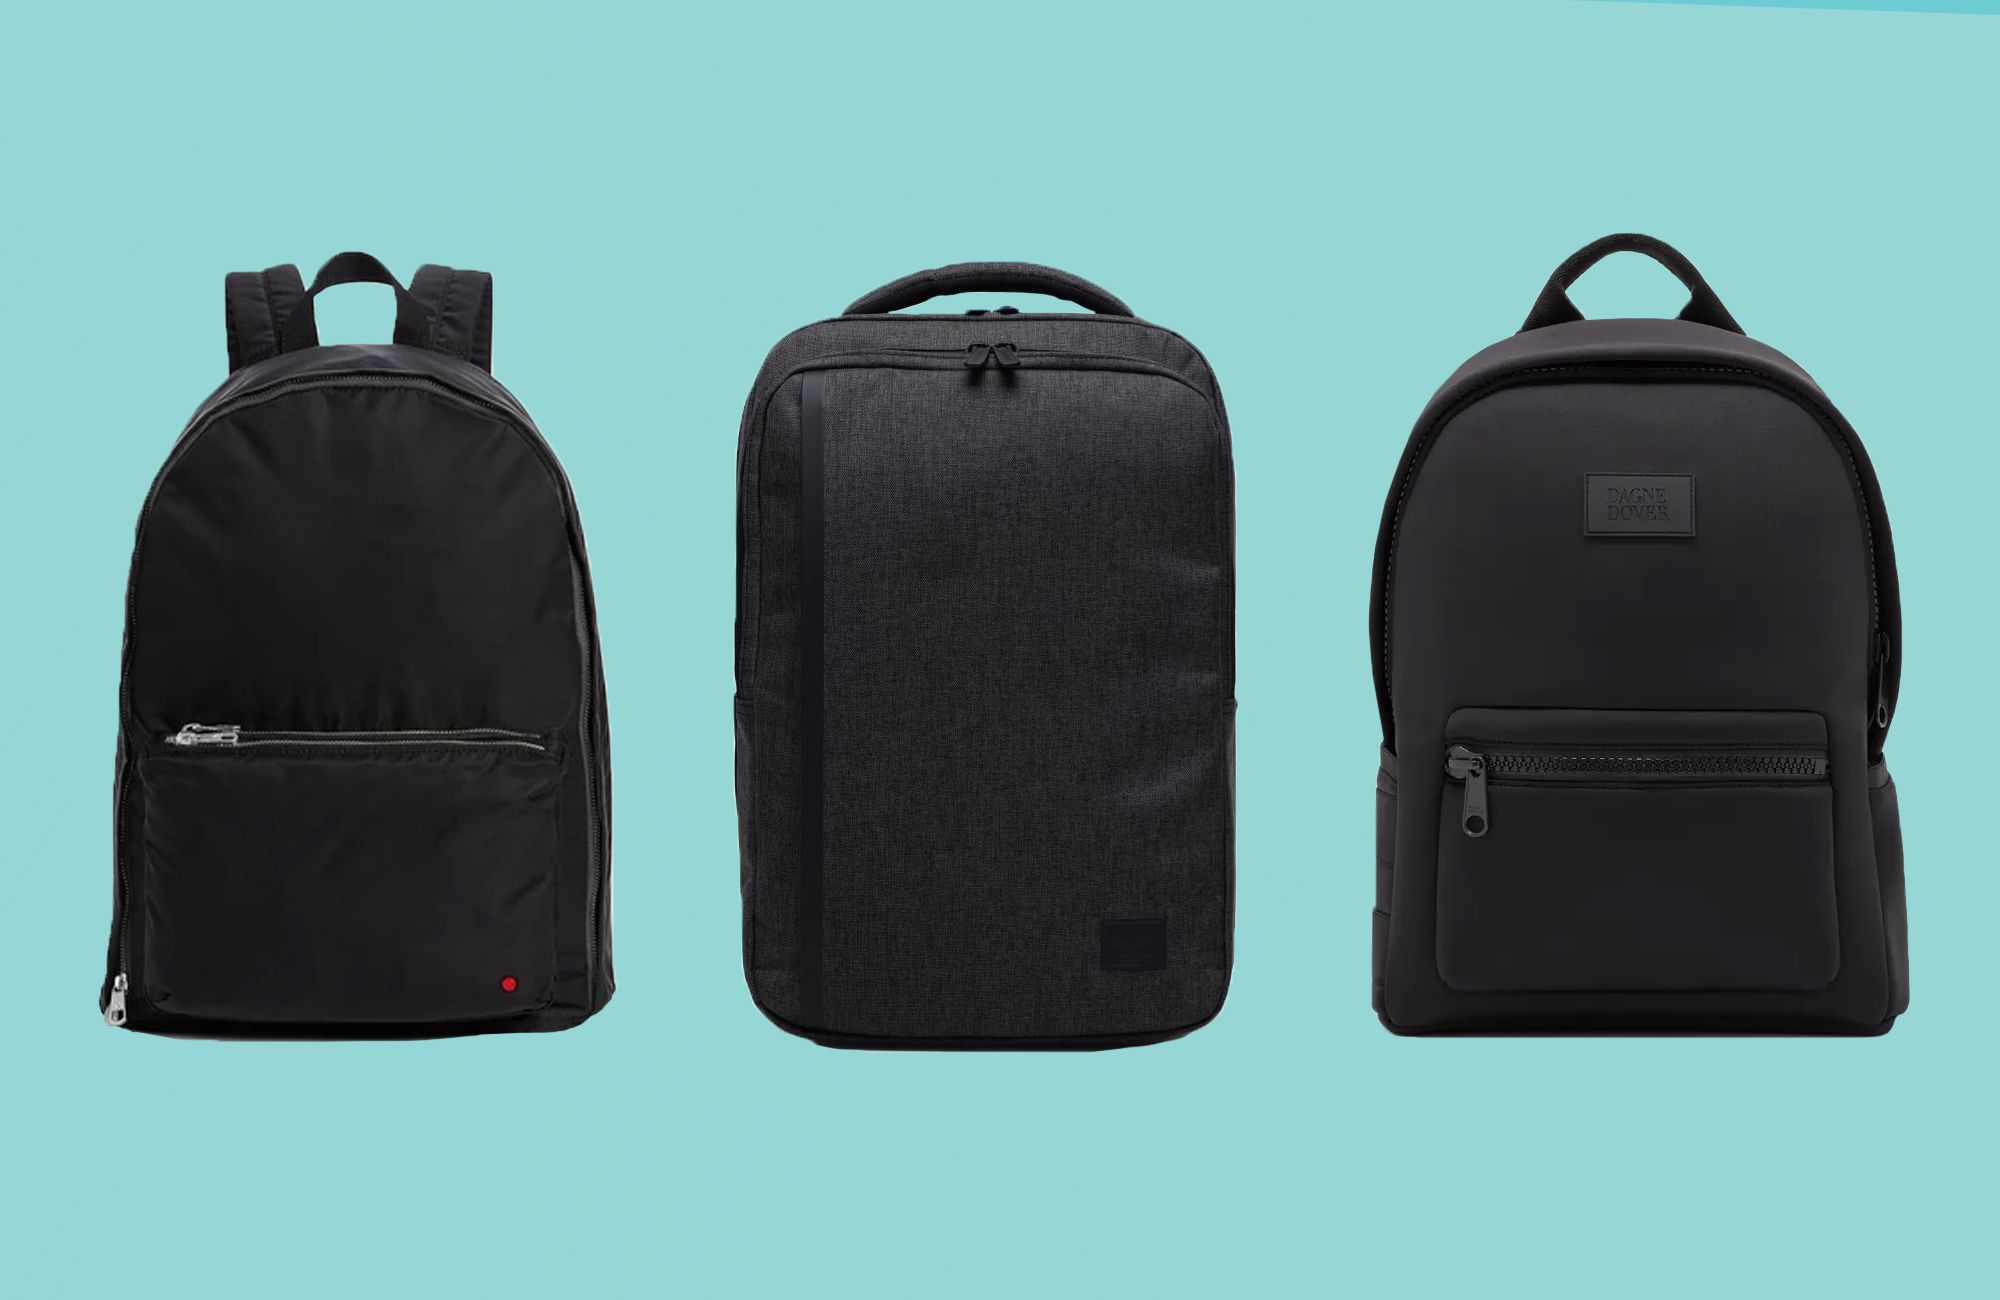 Bag Backpack High Capacity Sports Backpacks,Laptop Bag Girls Gym Bag Travel Bag for Women and Men 